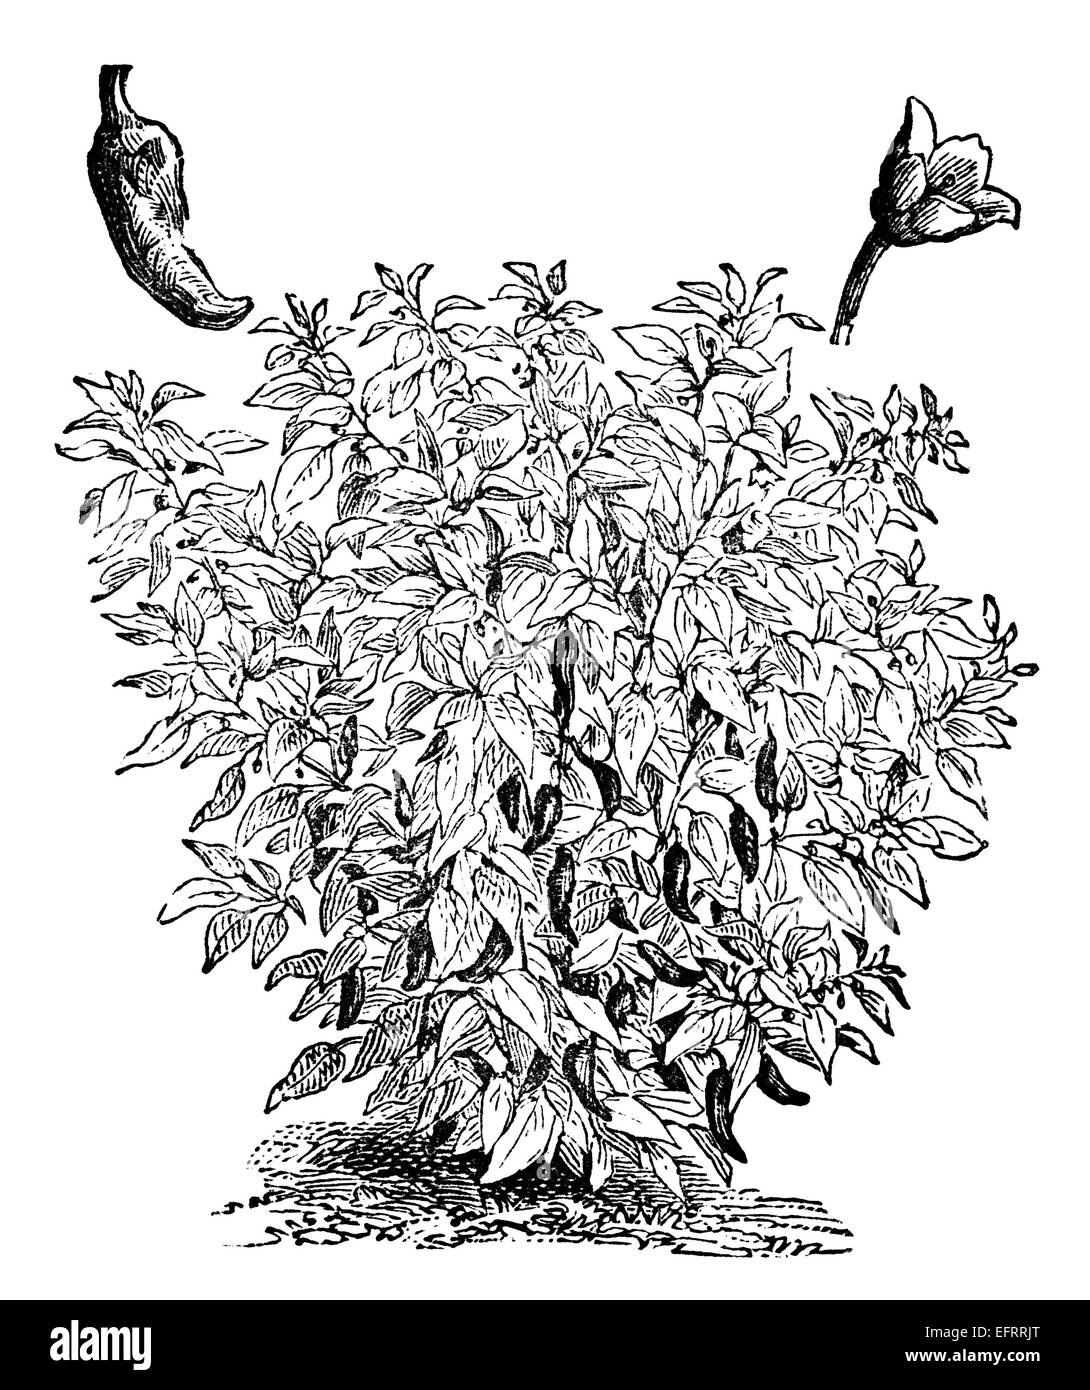 Viktorianische Gravur eines Capiscum oder einer Pfefferpflanze. Digital restaurierten Bild aus einem Mitte des 19. Jahrhundert Enzyklopädie. Stockfoto